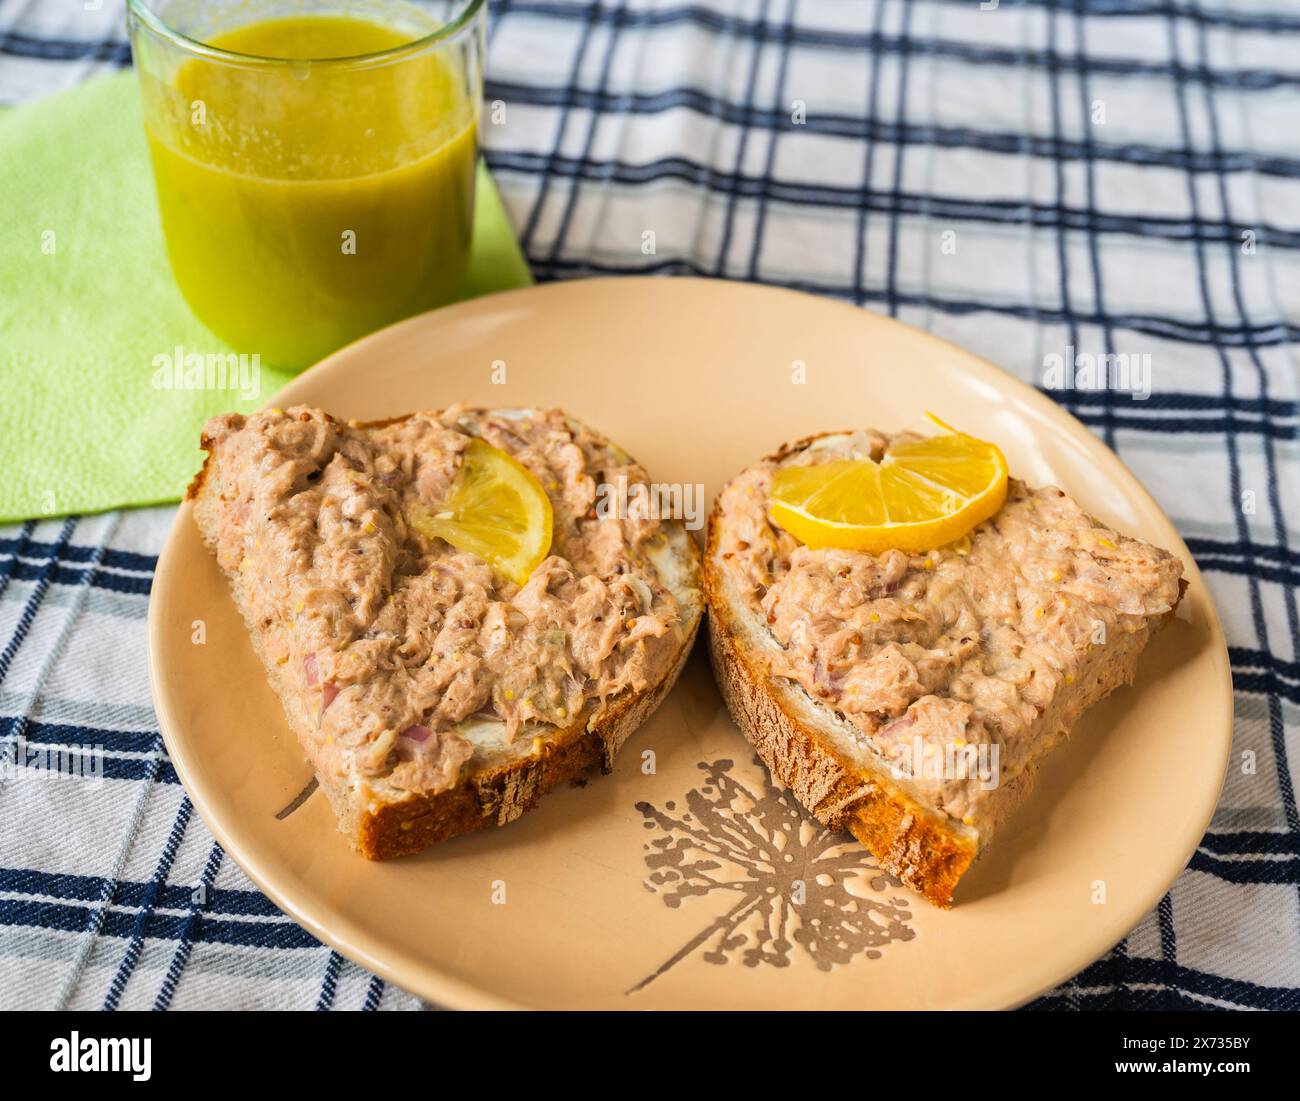 Zwei Scheiben Brot mit Thunfischaufstrich, Zitrone, grüner Smoothie im Glas auf dem Tisch, Nahaufnahme. Frühstück oder Snack. Stockfoto